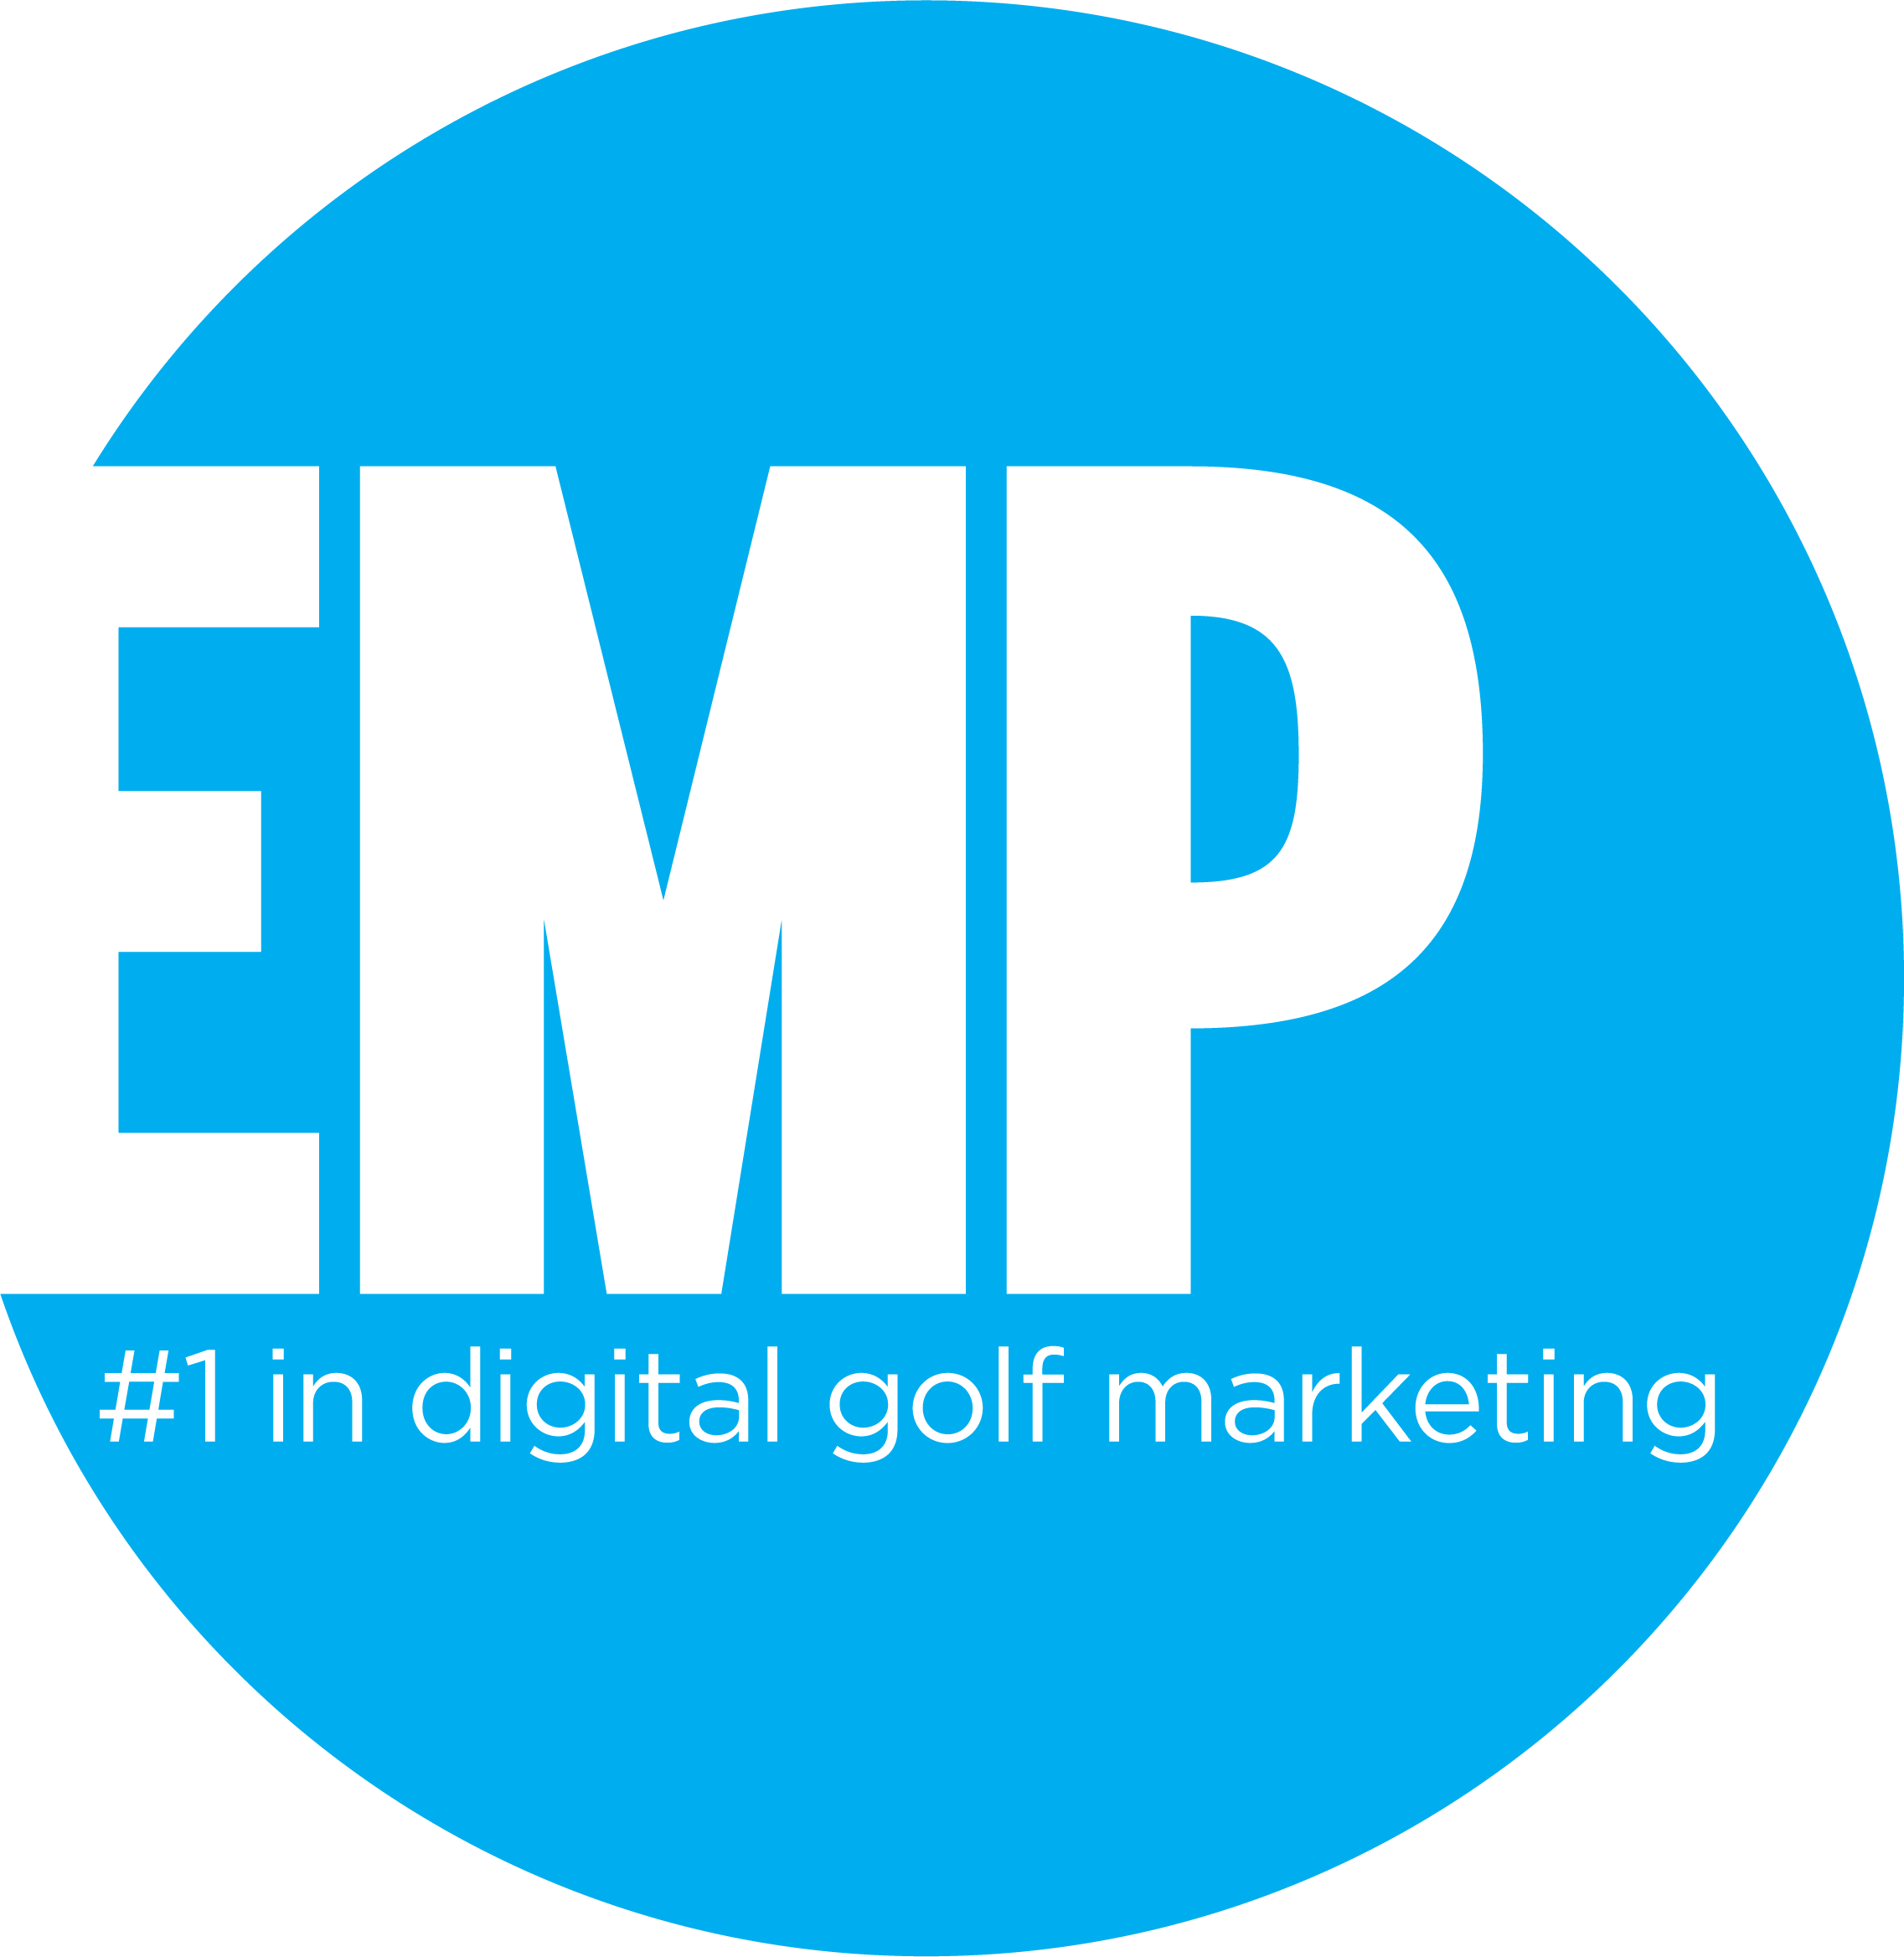 Blue Circle Brand Logo - EMP logo circle